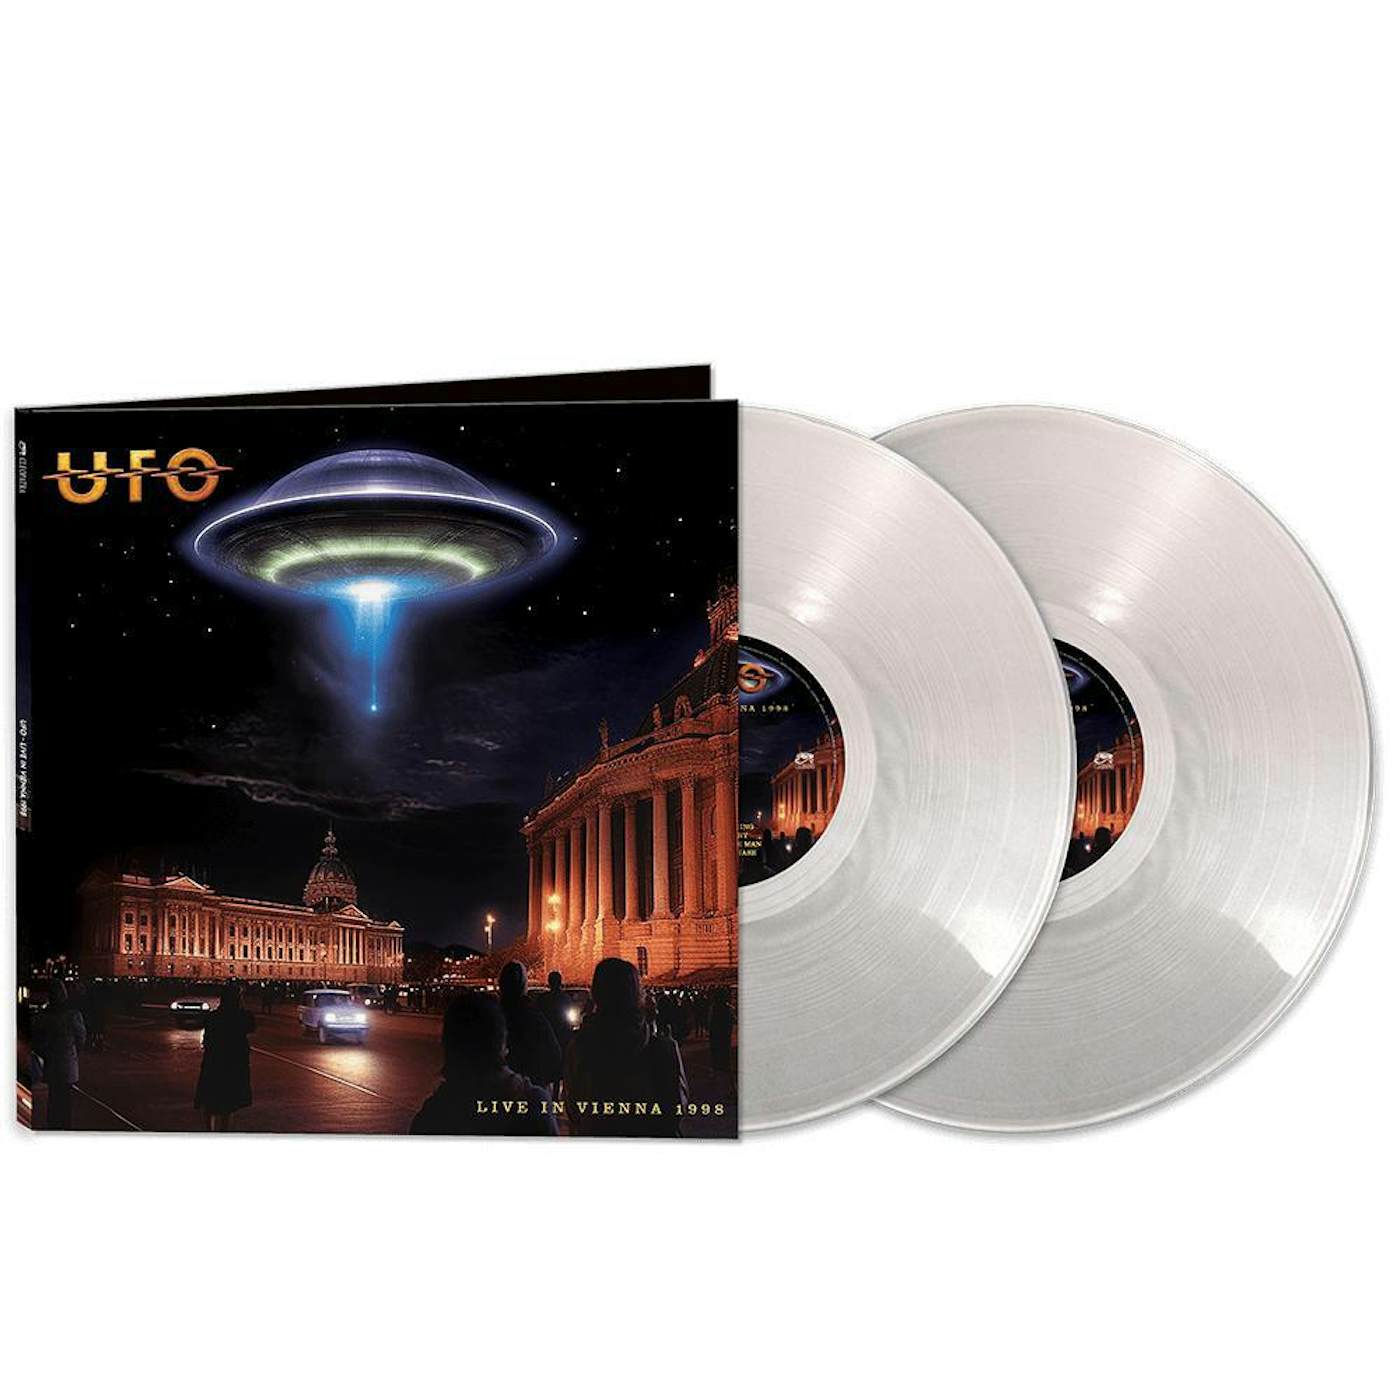 UFO Live In Vienna 1998 - Silver Vinyl Record